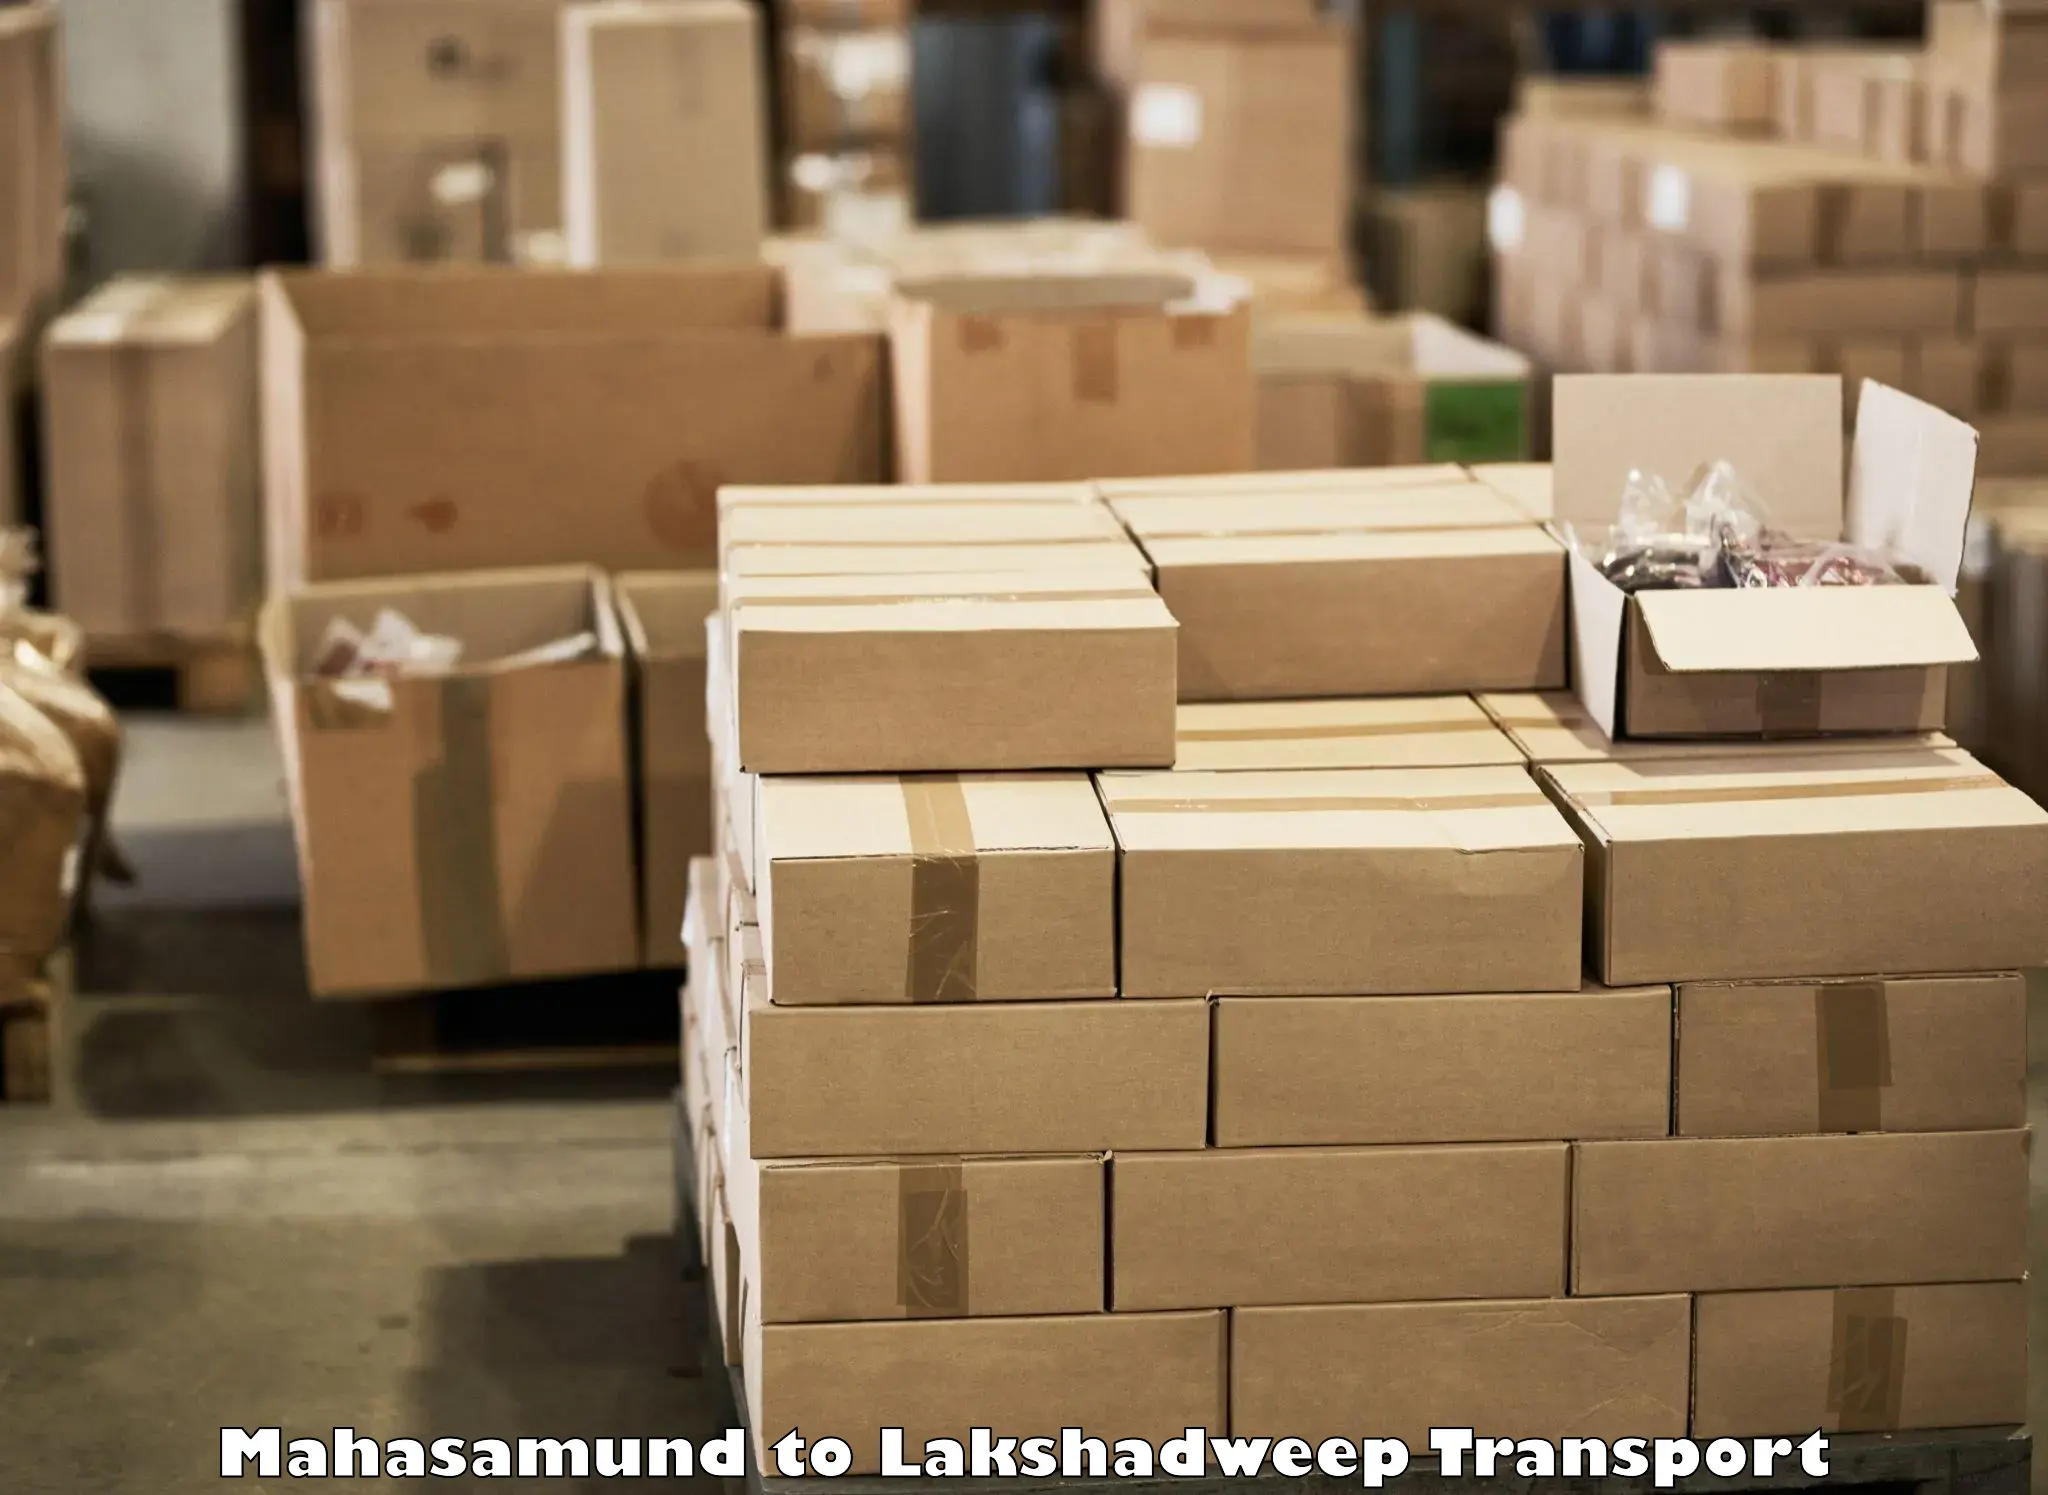 Online transport service Mahasamund to Lakshadweep